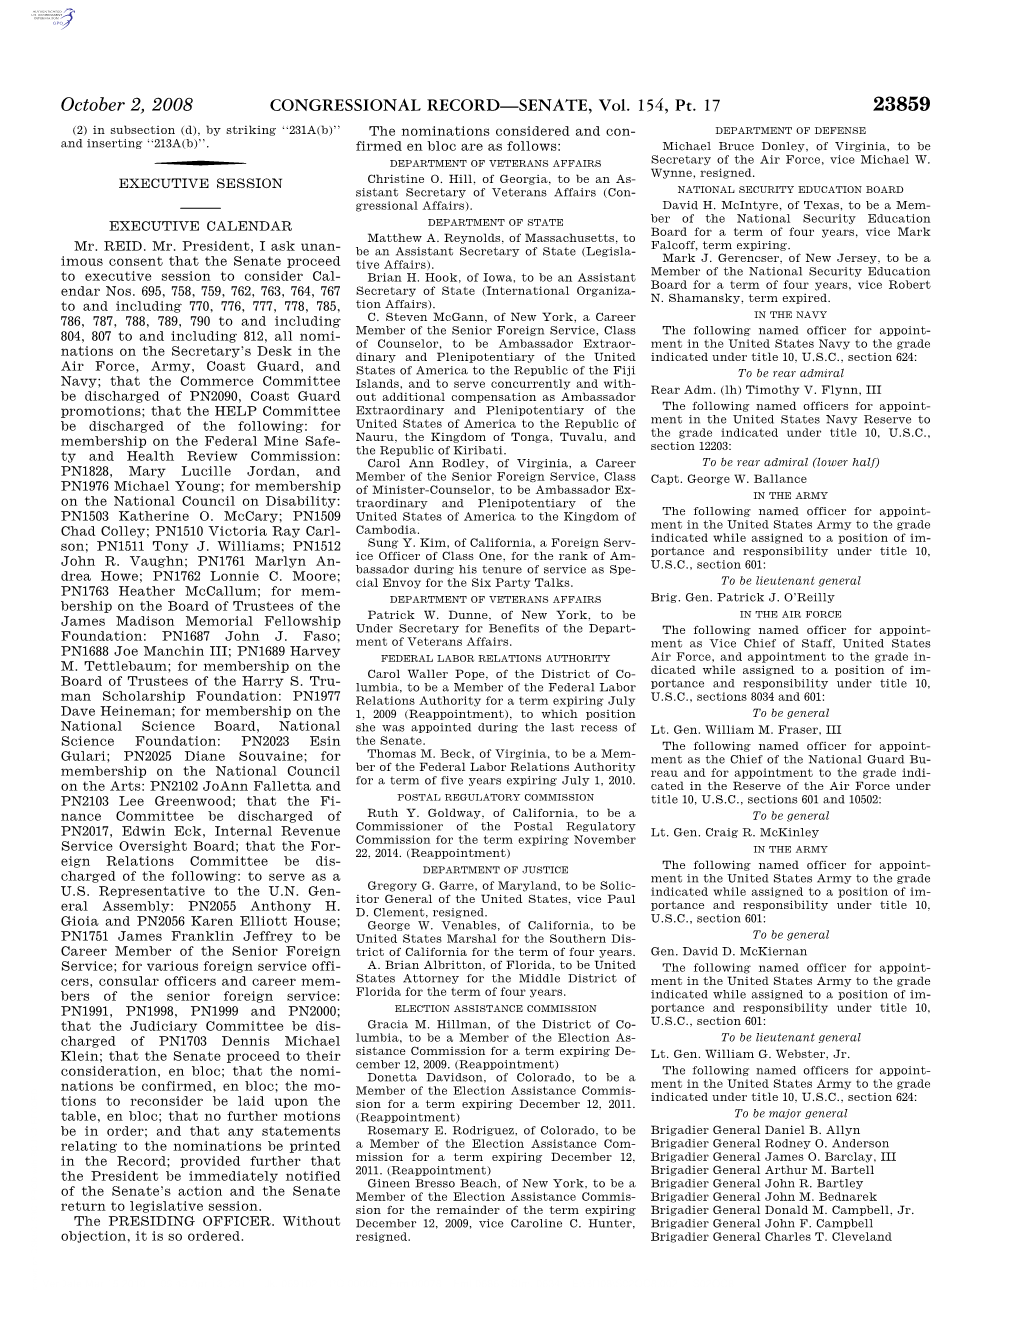 CONGRESSIONAL RECORD—SENATE, Vol. 154, Pt. 17 October 2, 2008 Brigadier General Jeffrey J